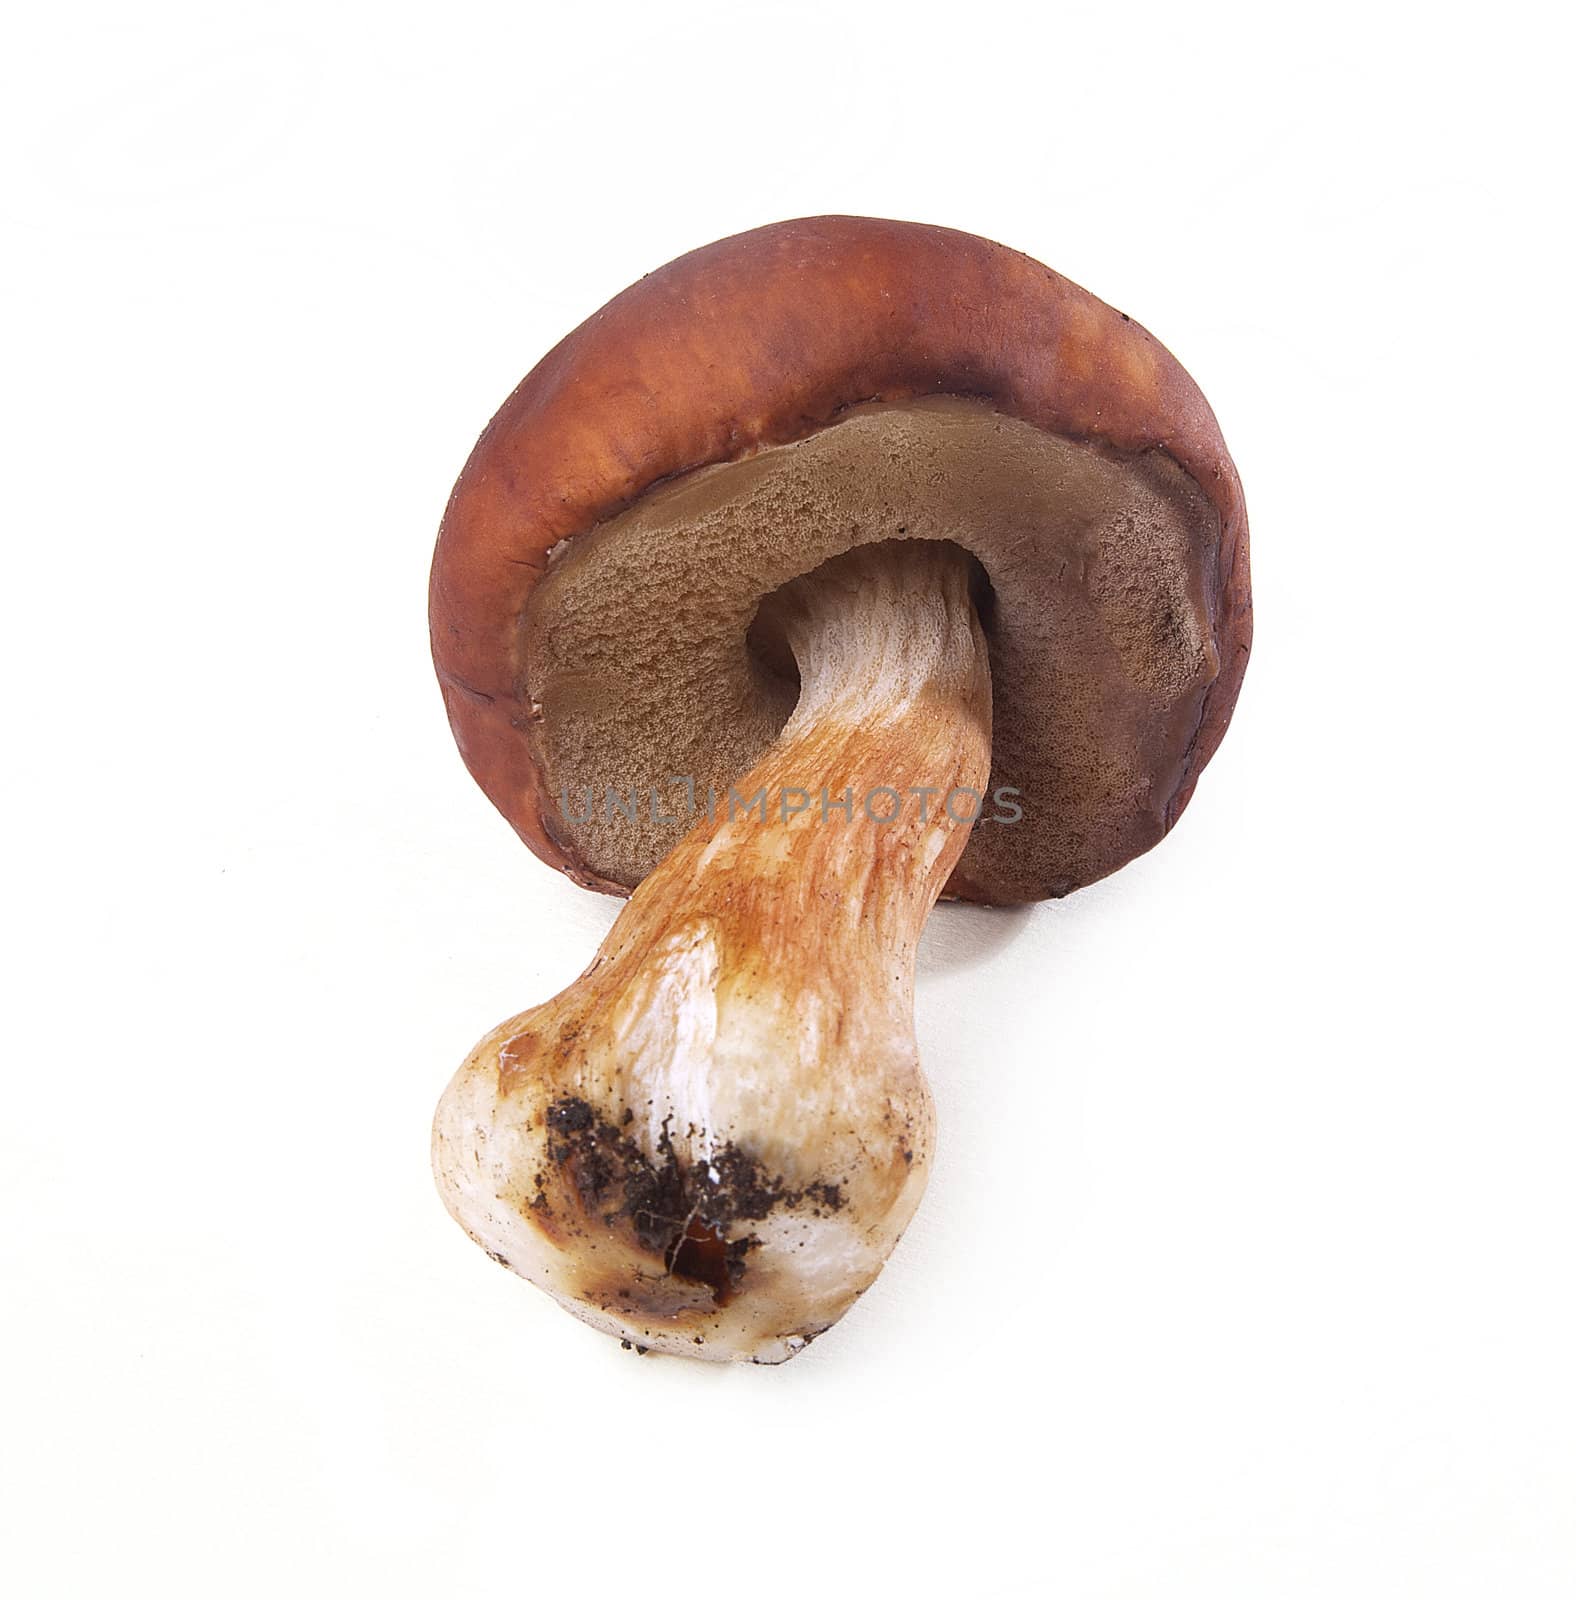 Mushroom by Angorius